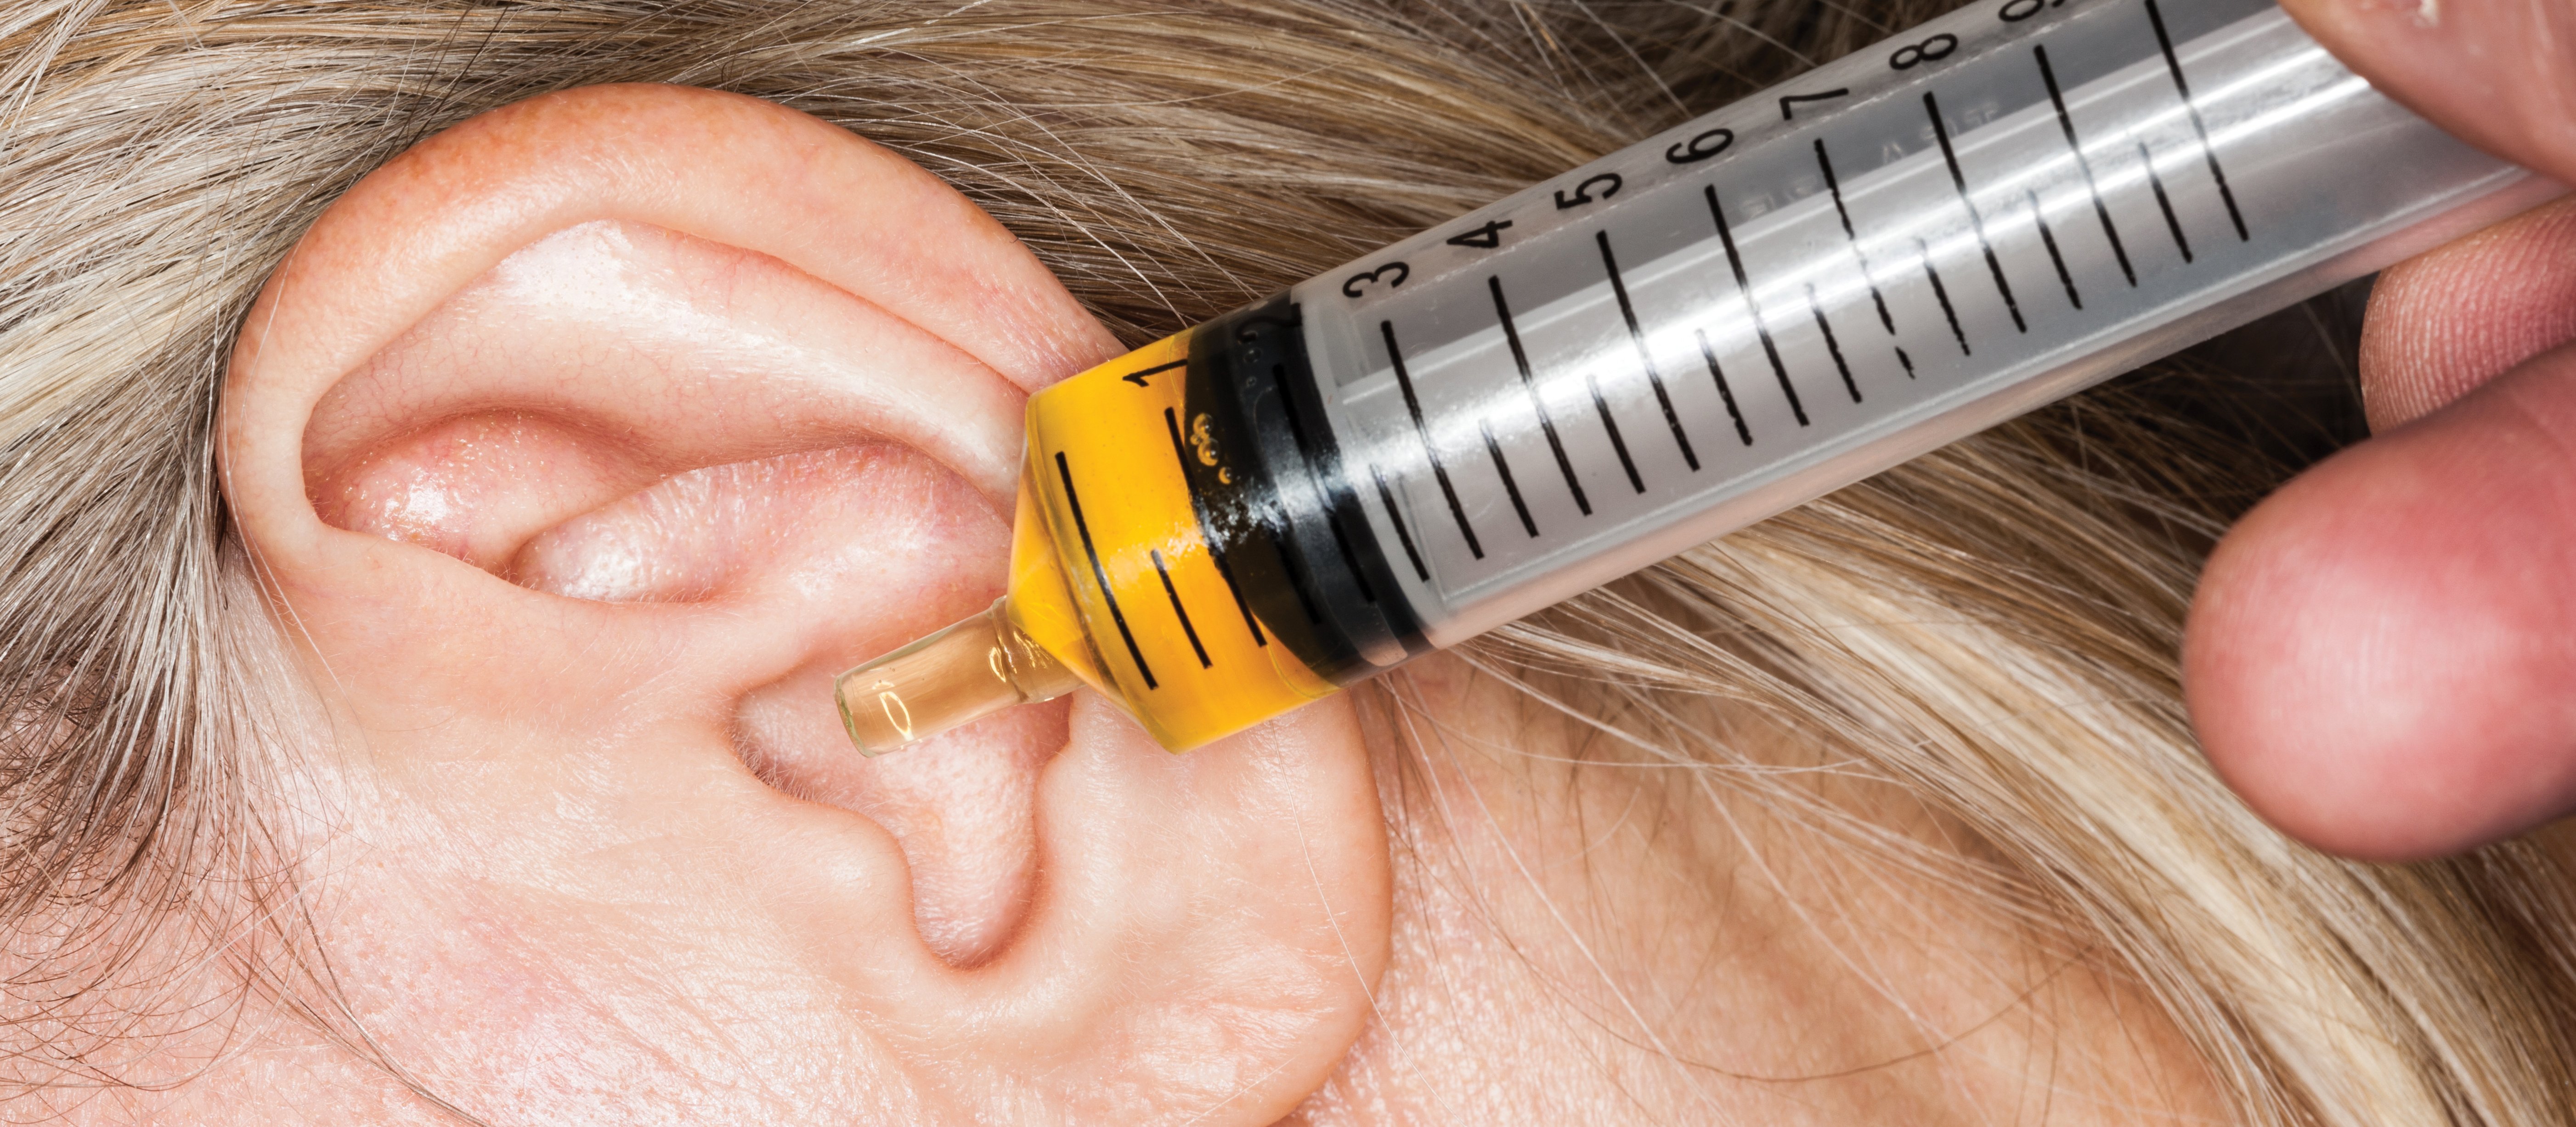 Что можно закапать в ухо при болях